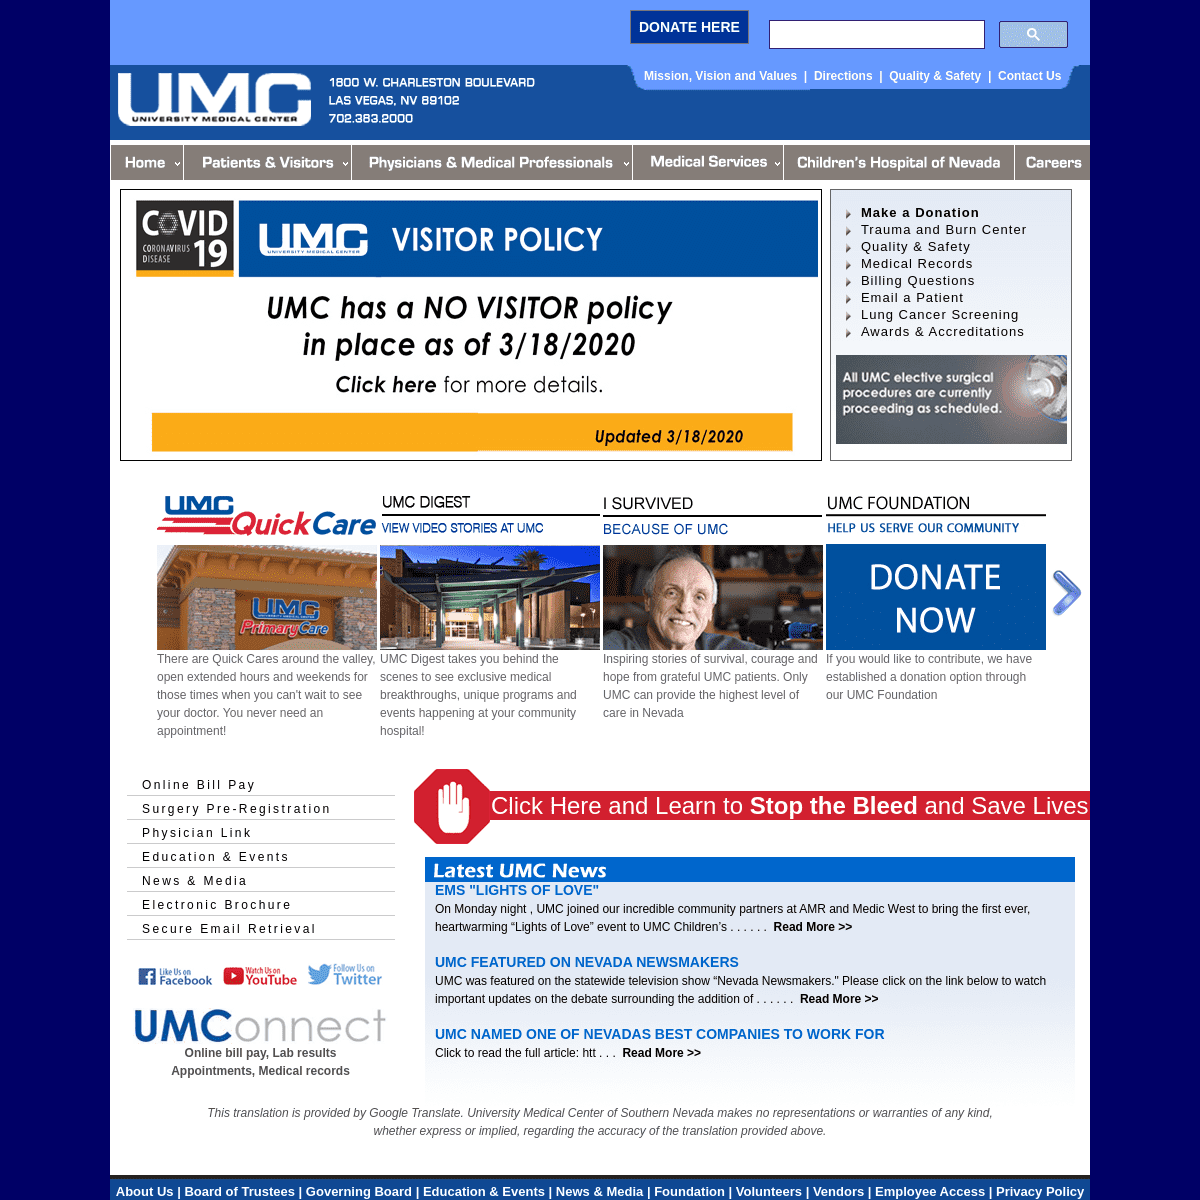 A complete backup of umcsn.com